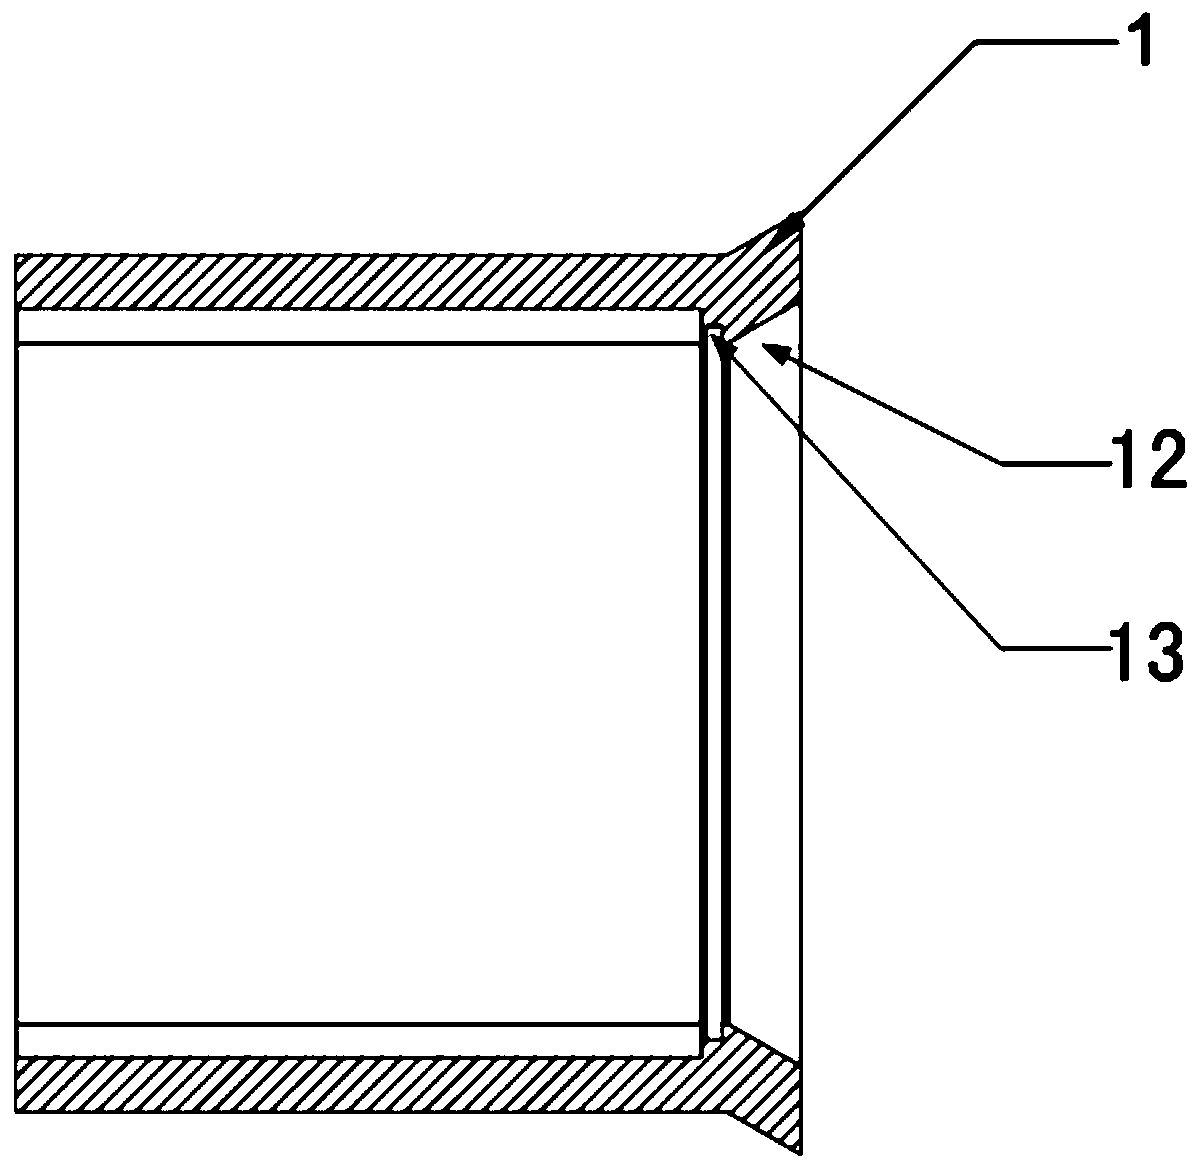 Elastic foil sheet gas bearing and elastic foil sheet gas bearing friction pair